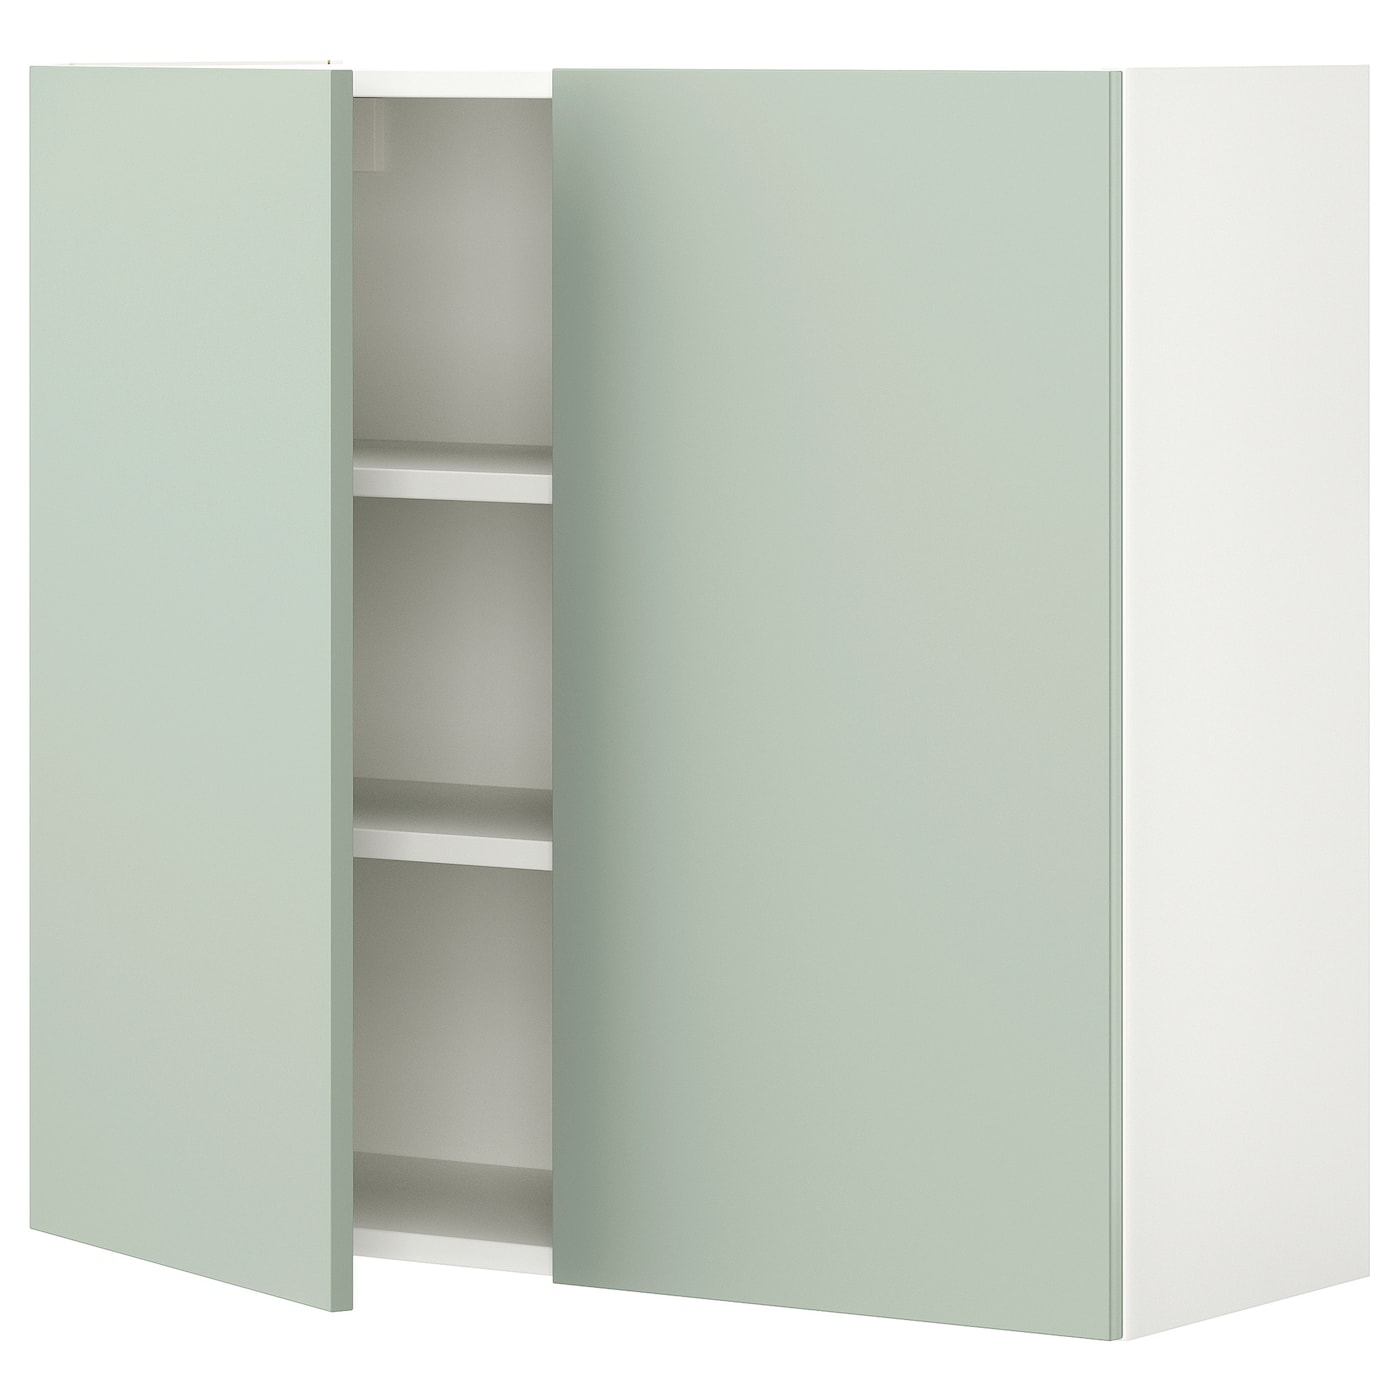 Навесной шкаф с полкой - ENHET   IKEA/ ЭНХЕТ ИКЕА, 80х75 см, белый/ зеленый